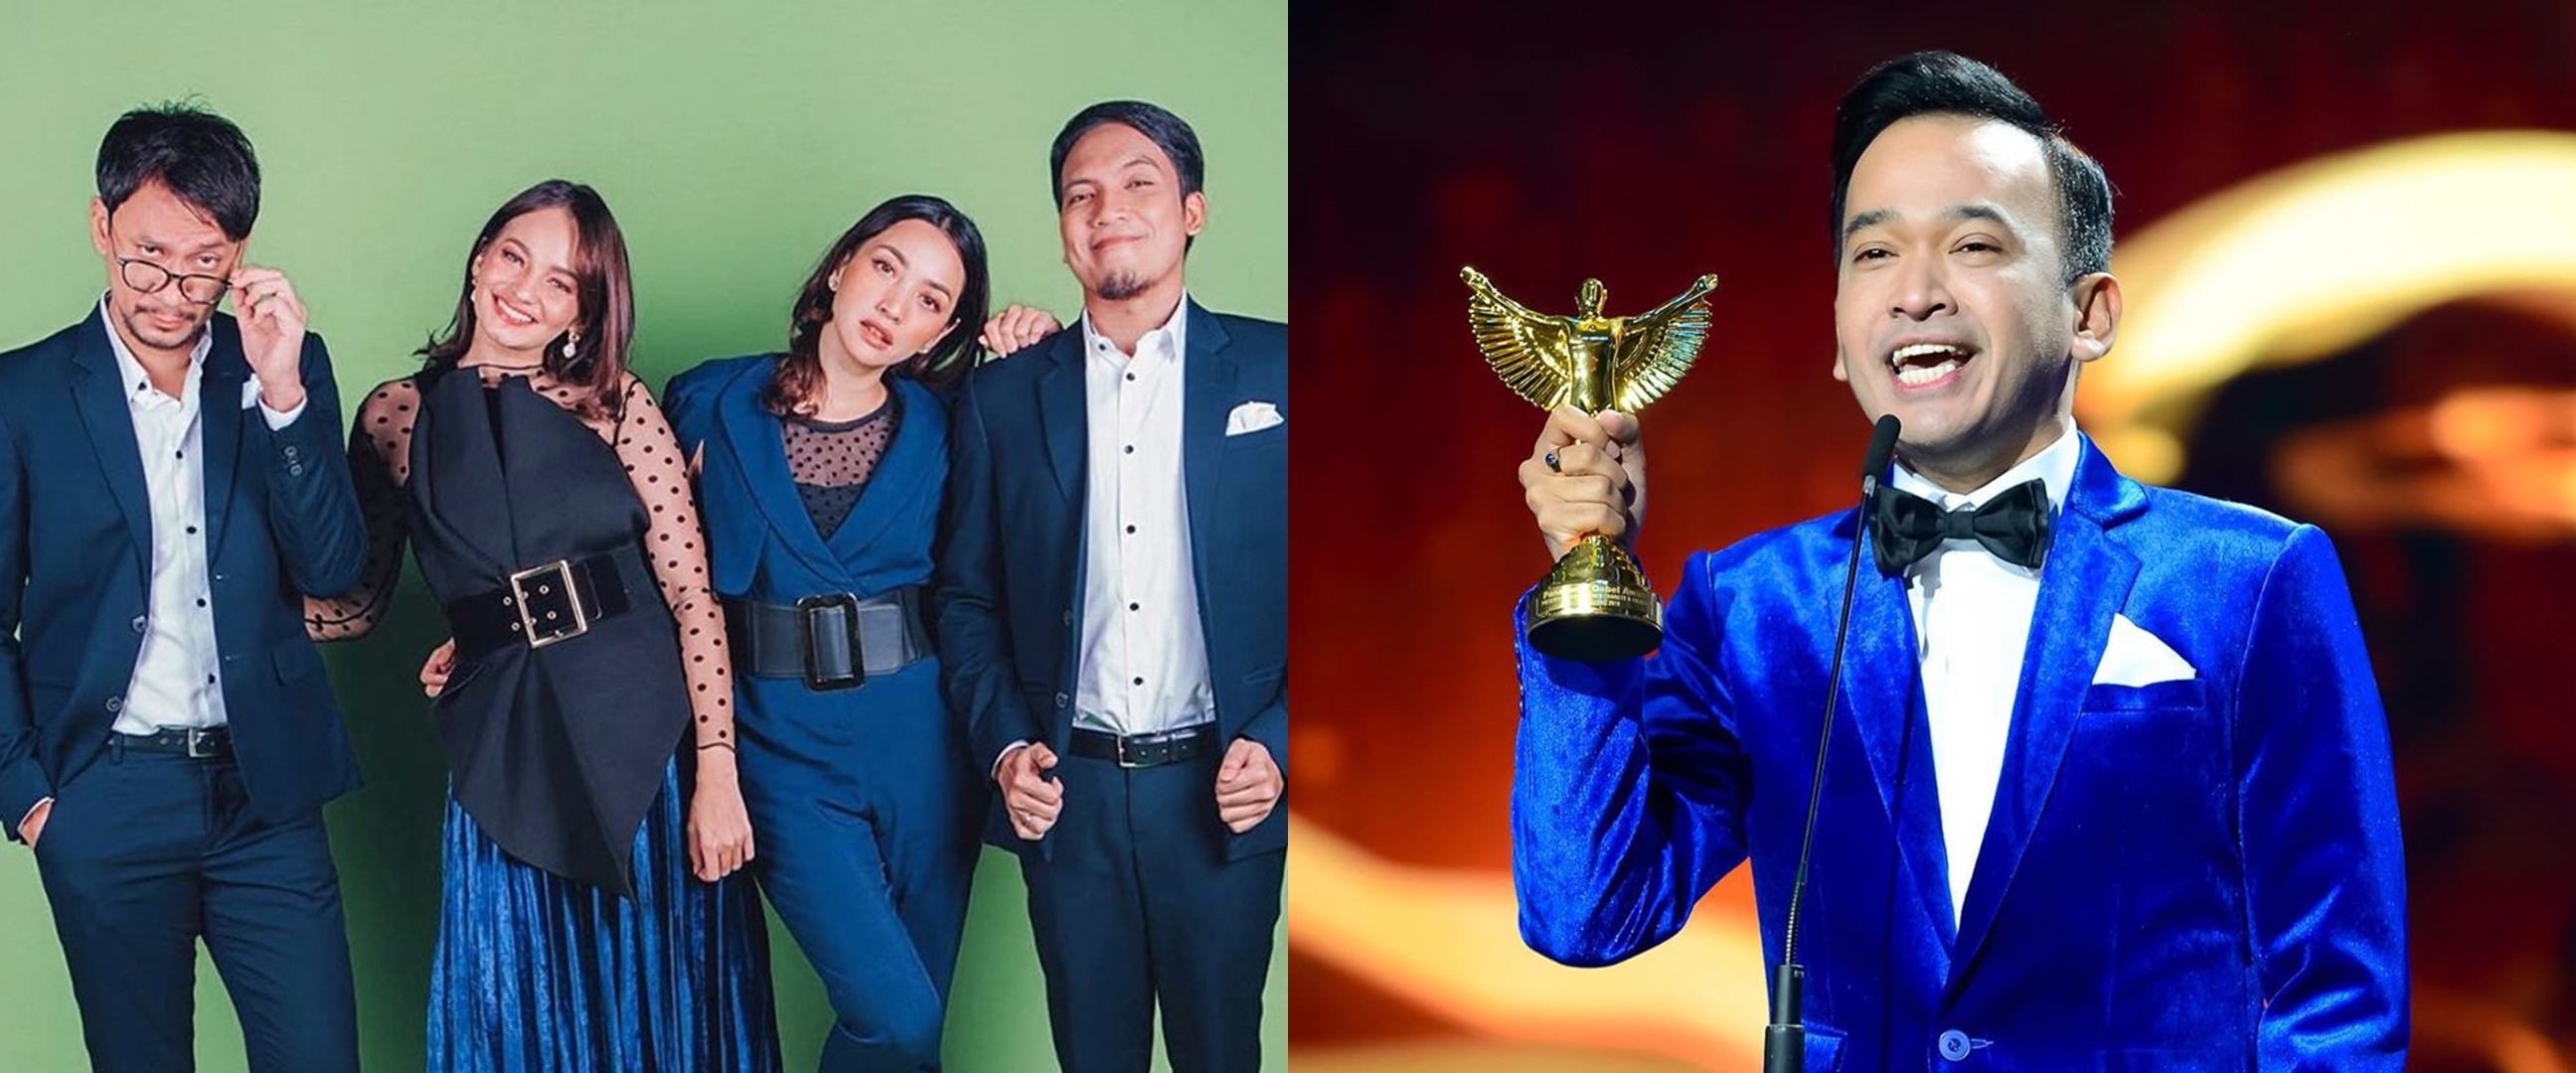 Daftar pemenang Panasonic Gobel Awards 2019, selamat!